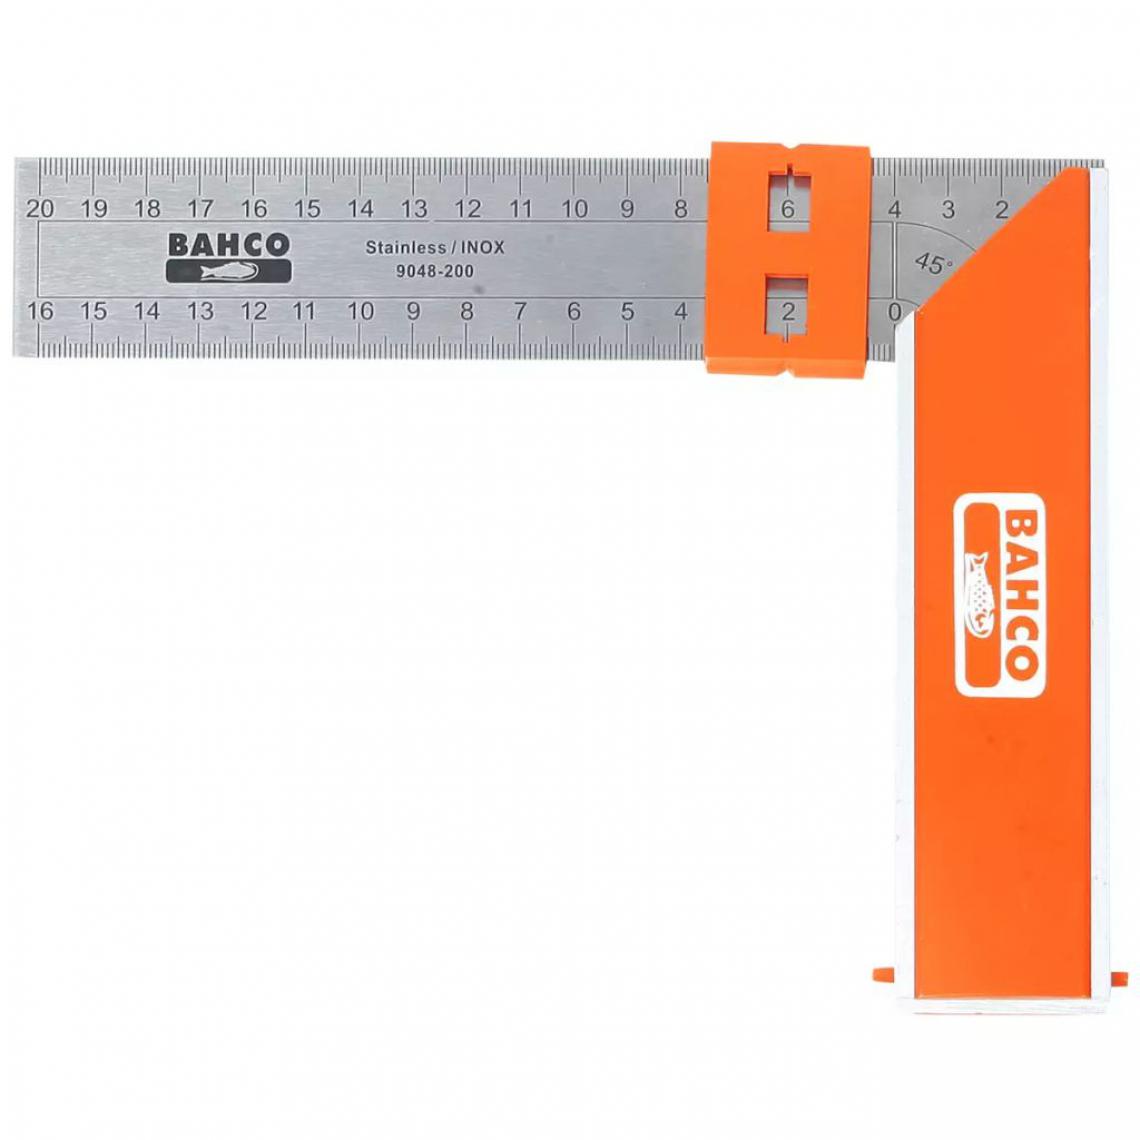 Bahco - BAHCO Equerre de menuisier de marque 300 mm Orange 9048-300 - Équerre étagère